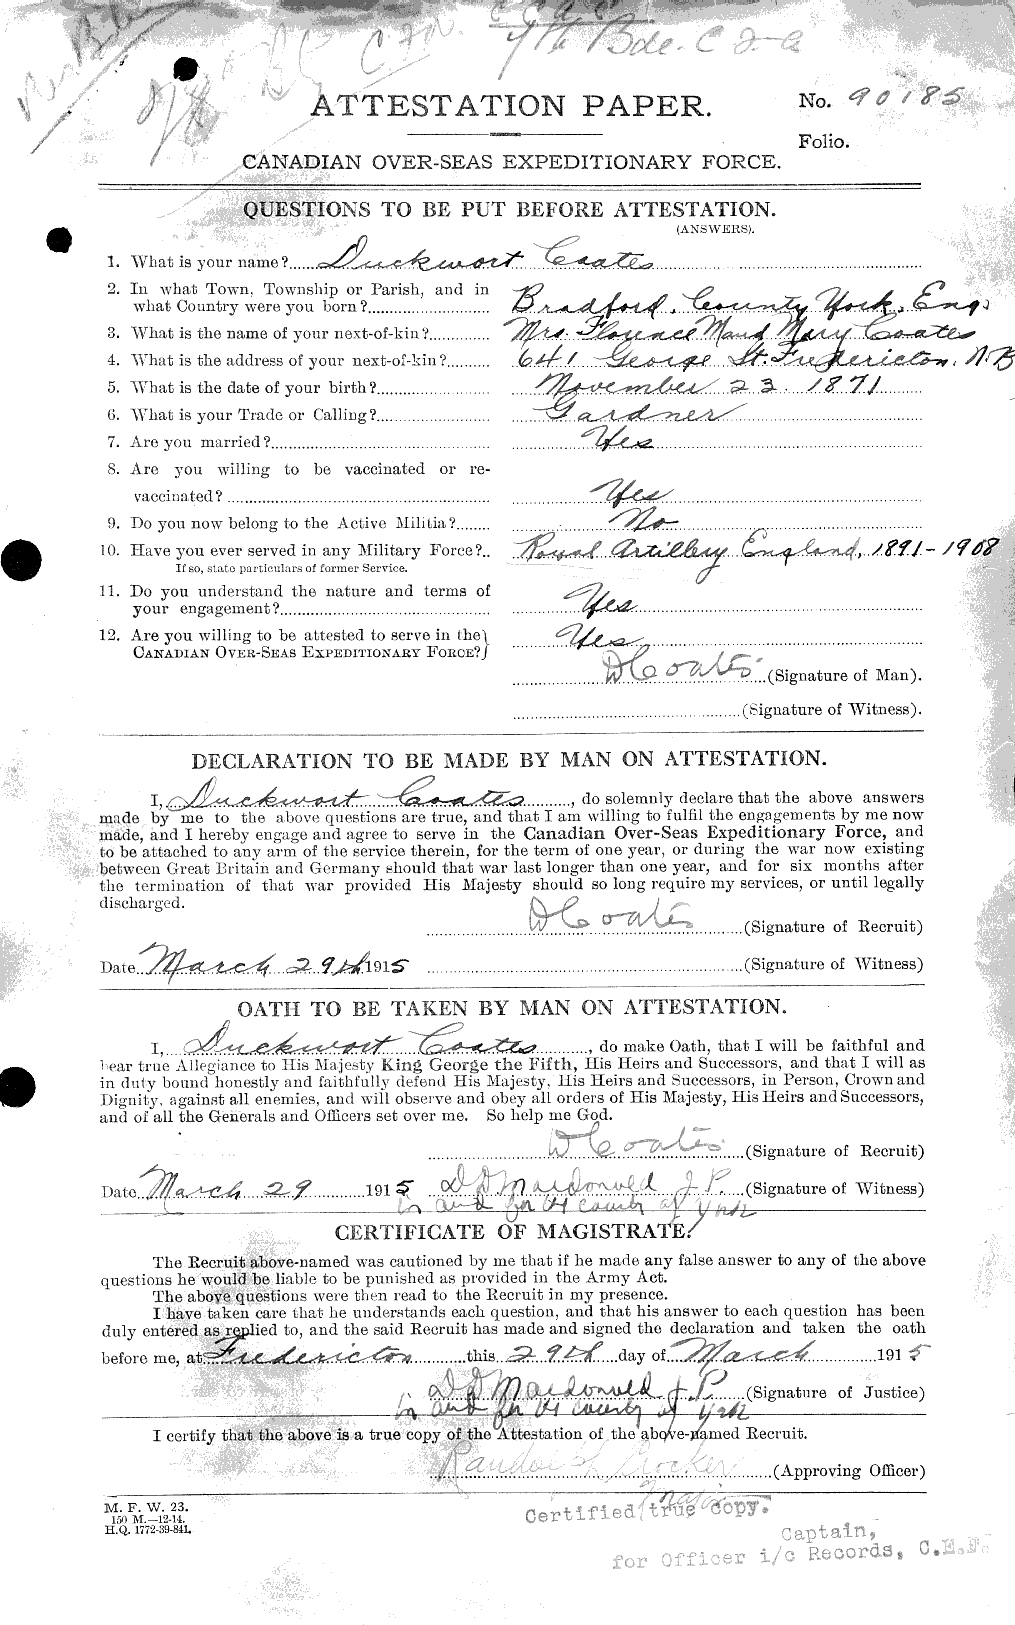 Dossiers du Personnel de la Première Guerre mondiale - CEC 025610c